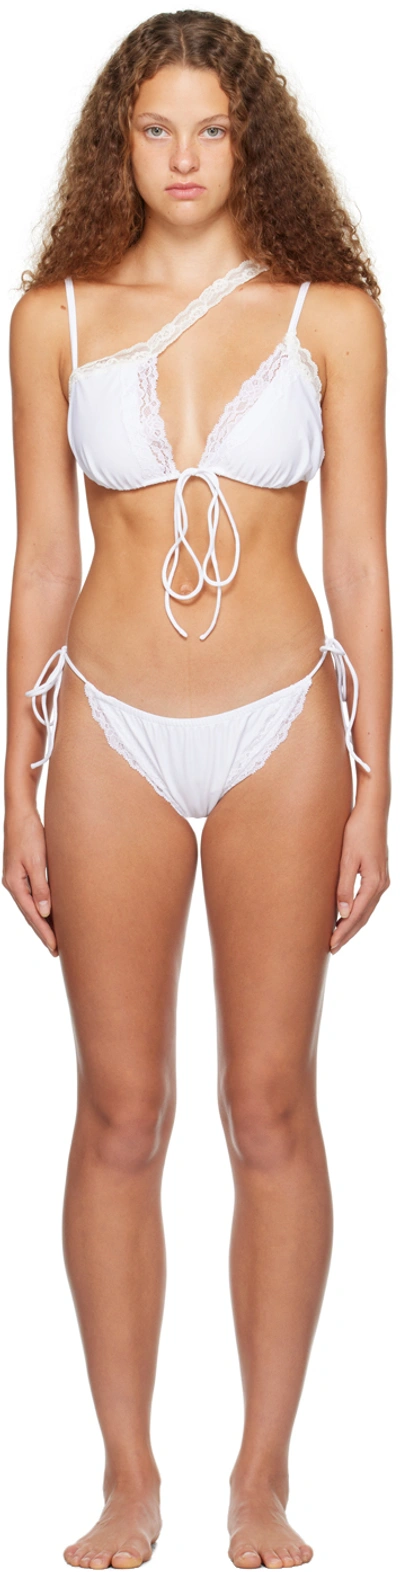 Vaillant White Asymmetric Bikini